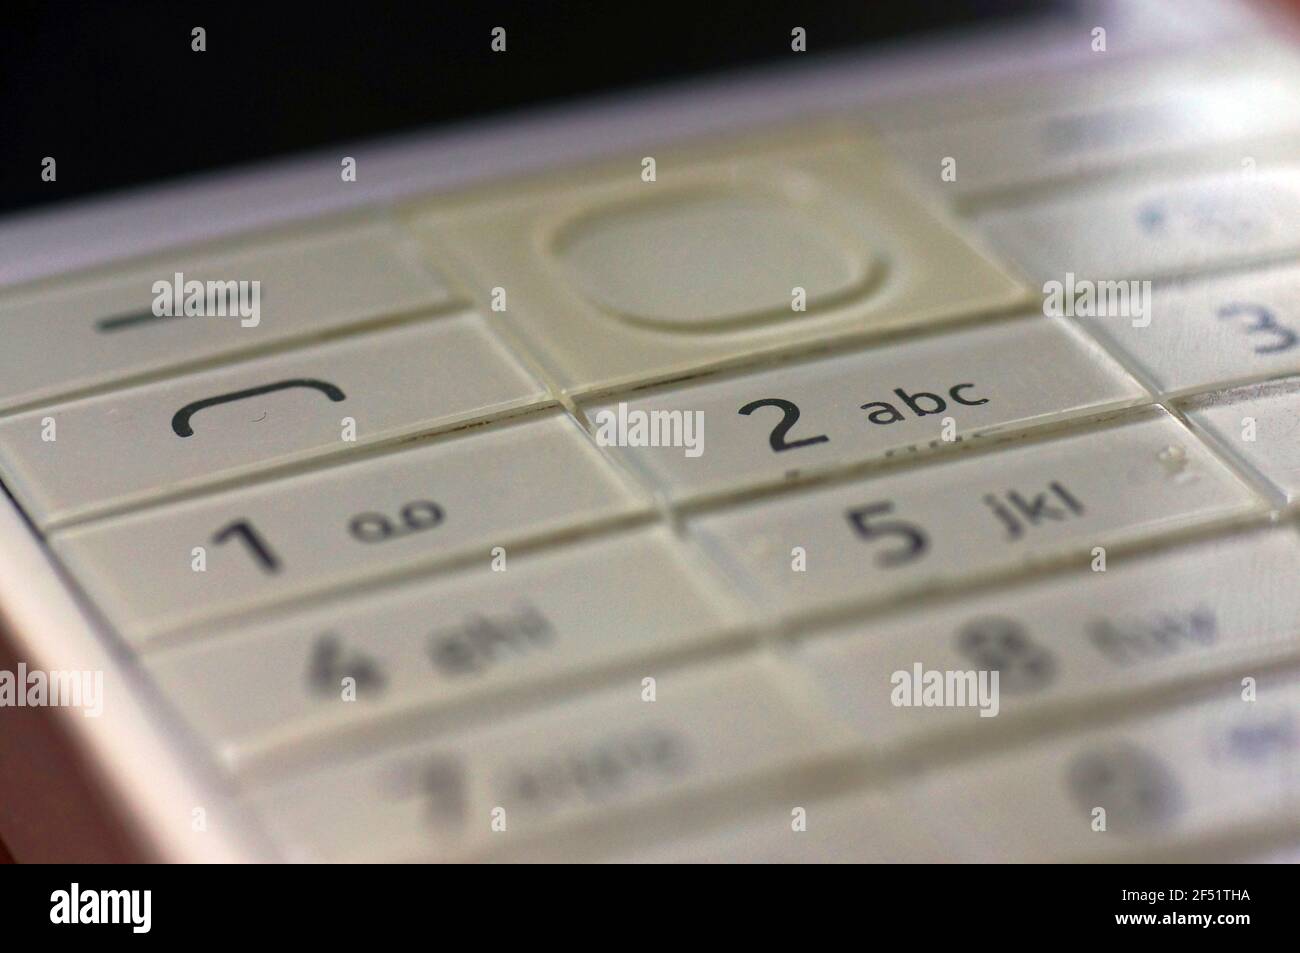 Tastiera bianca del telefono - vecchia generazione. Tasto bianco luminoso  con numeri. Tastierino per la digitazione dei messaggi. Vecchio telefono  cellulare Foto stock - Alamy